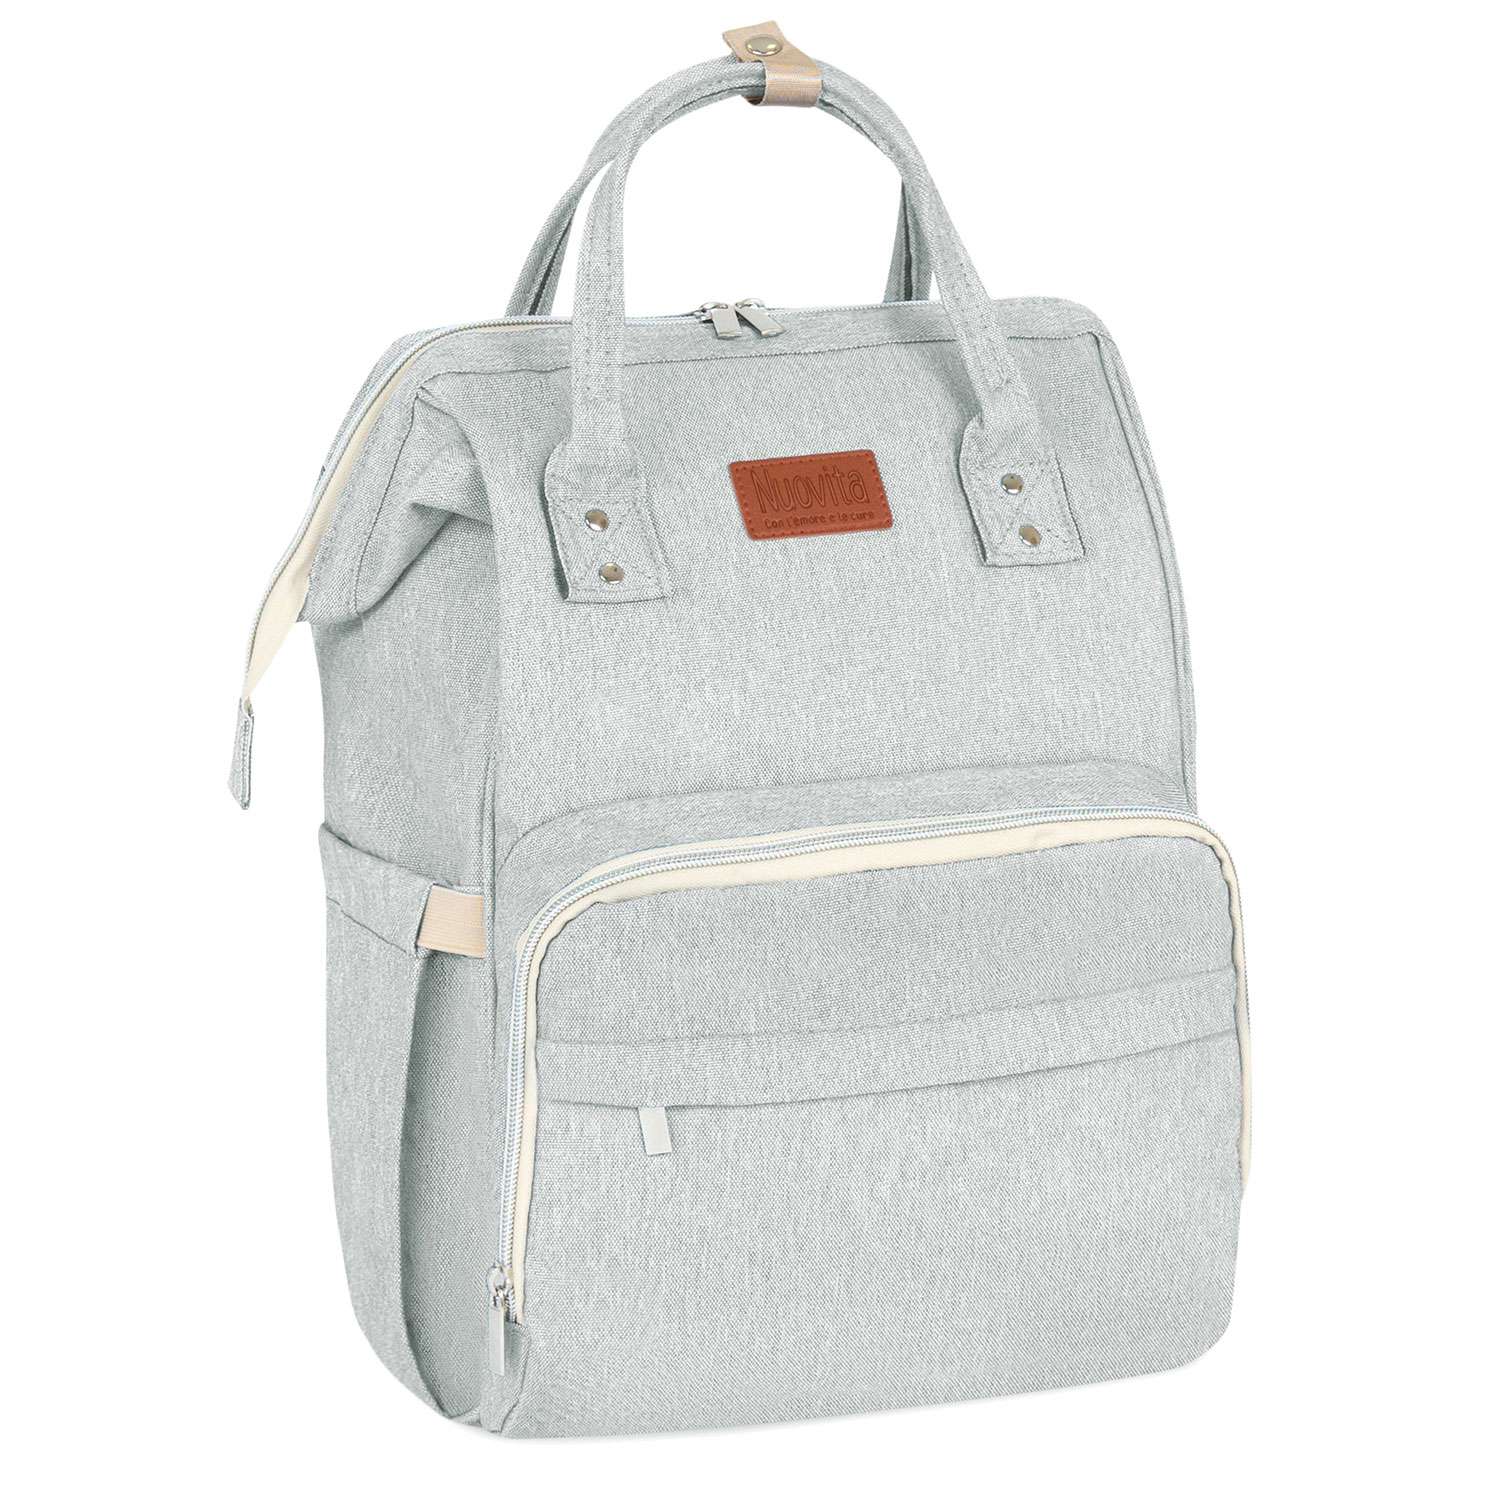 Рюкзак для мамы Nuovita CAPCAP classic Светло-серый - фото 1